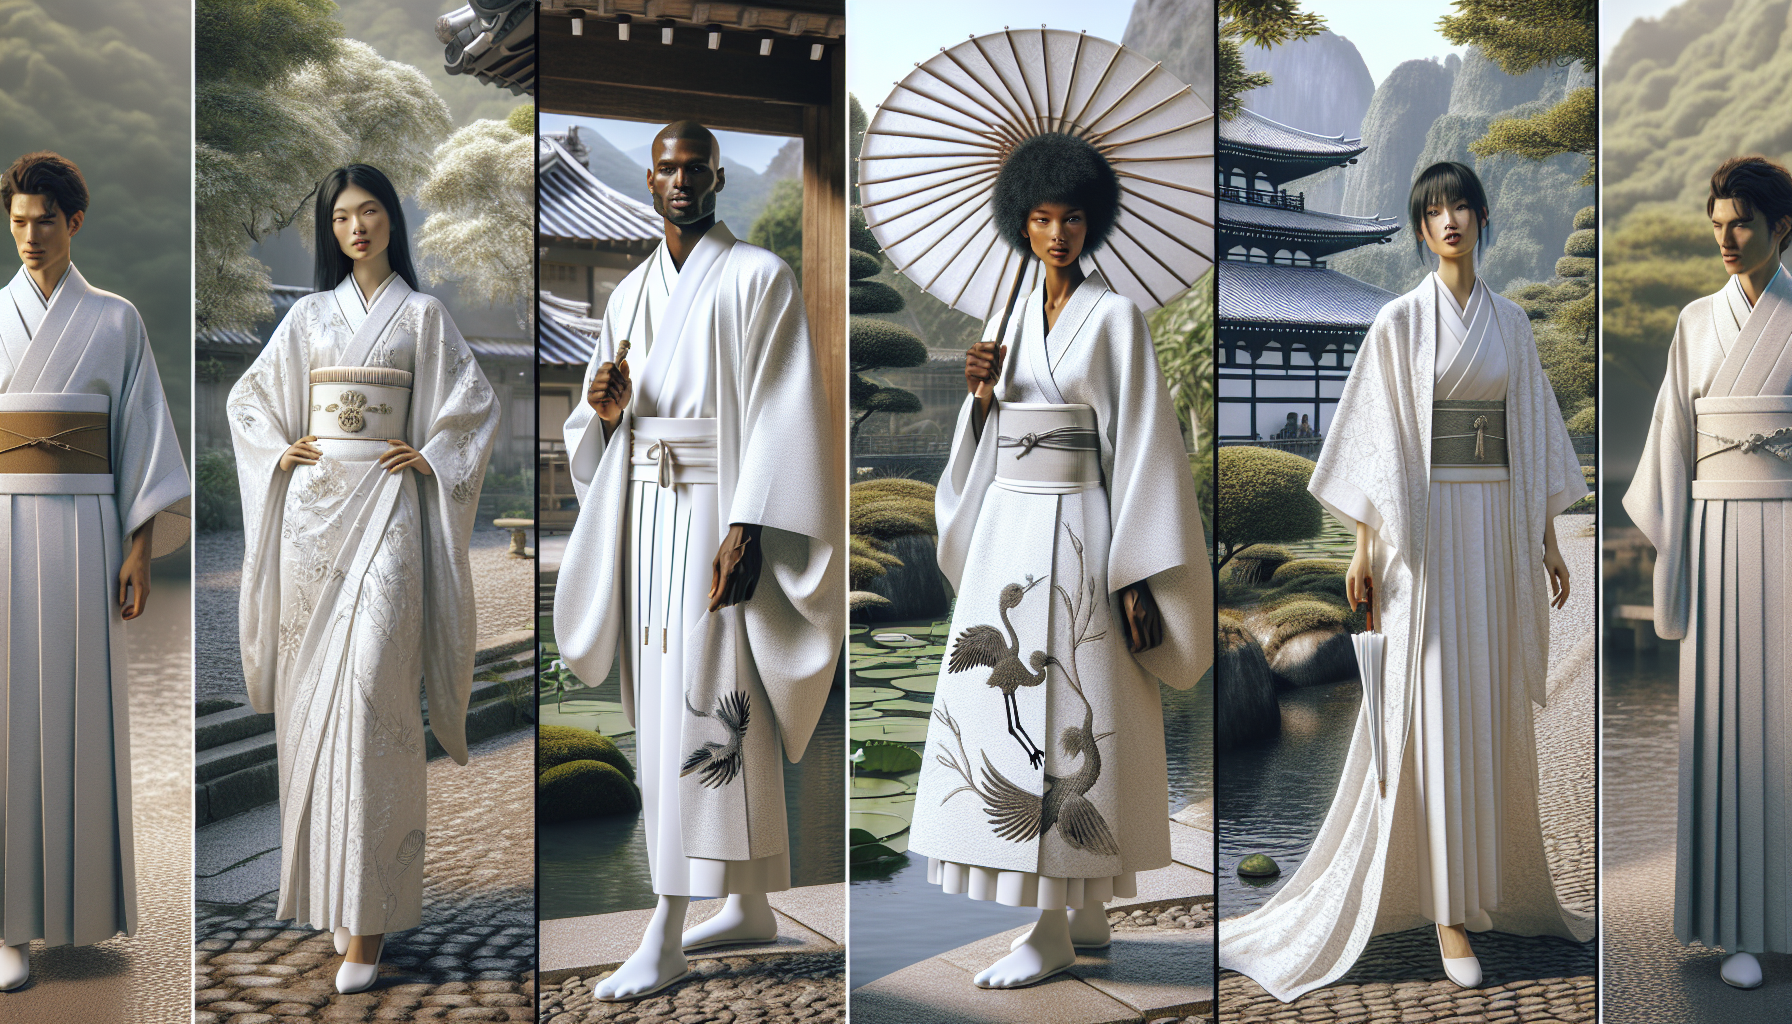 Comment porter élégamment un kimono blanc ?